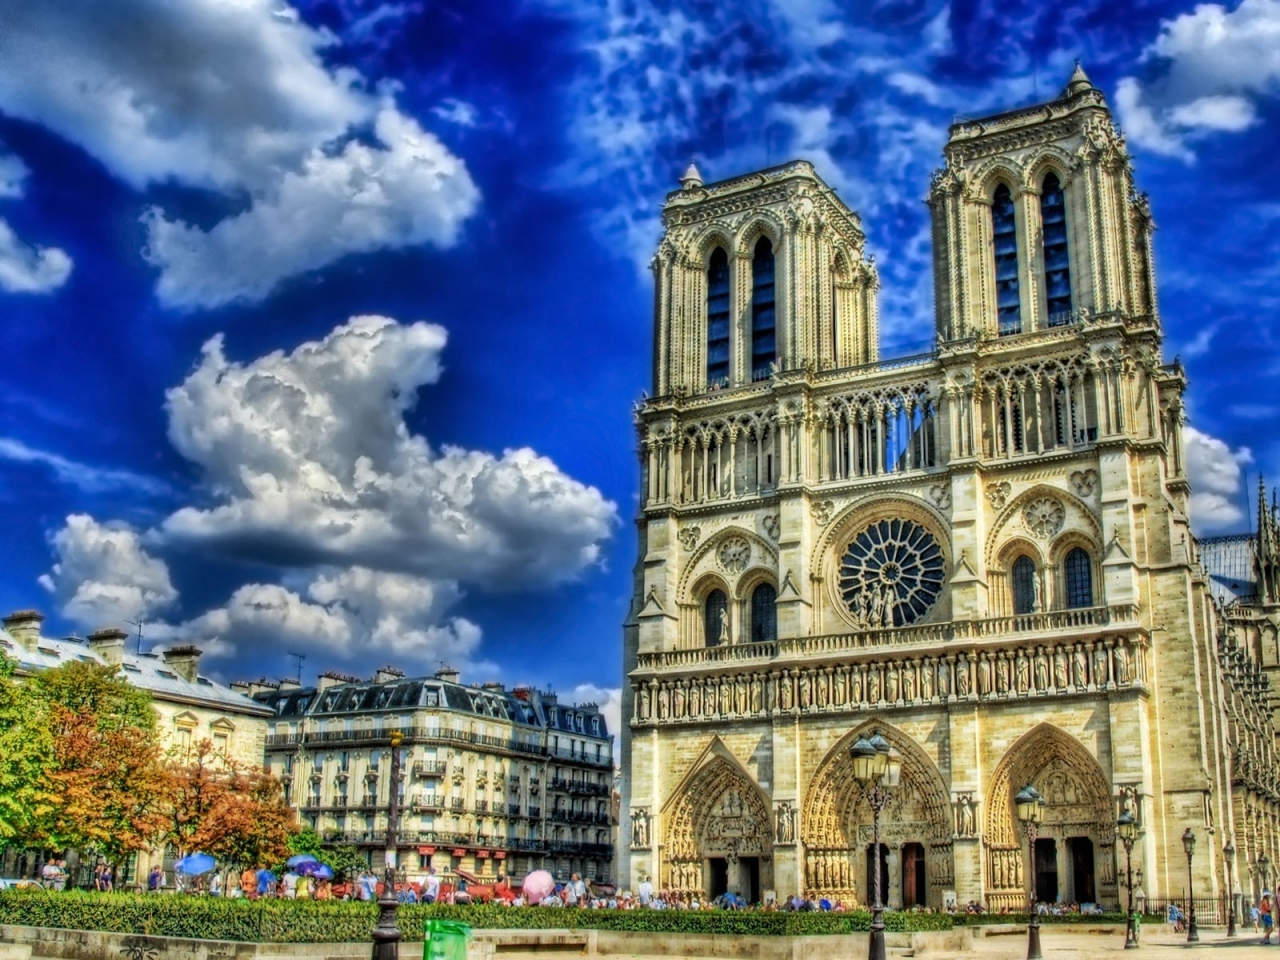 Notre Dame de Paris Cathedral for 1280 x 960 resolution